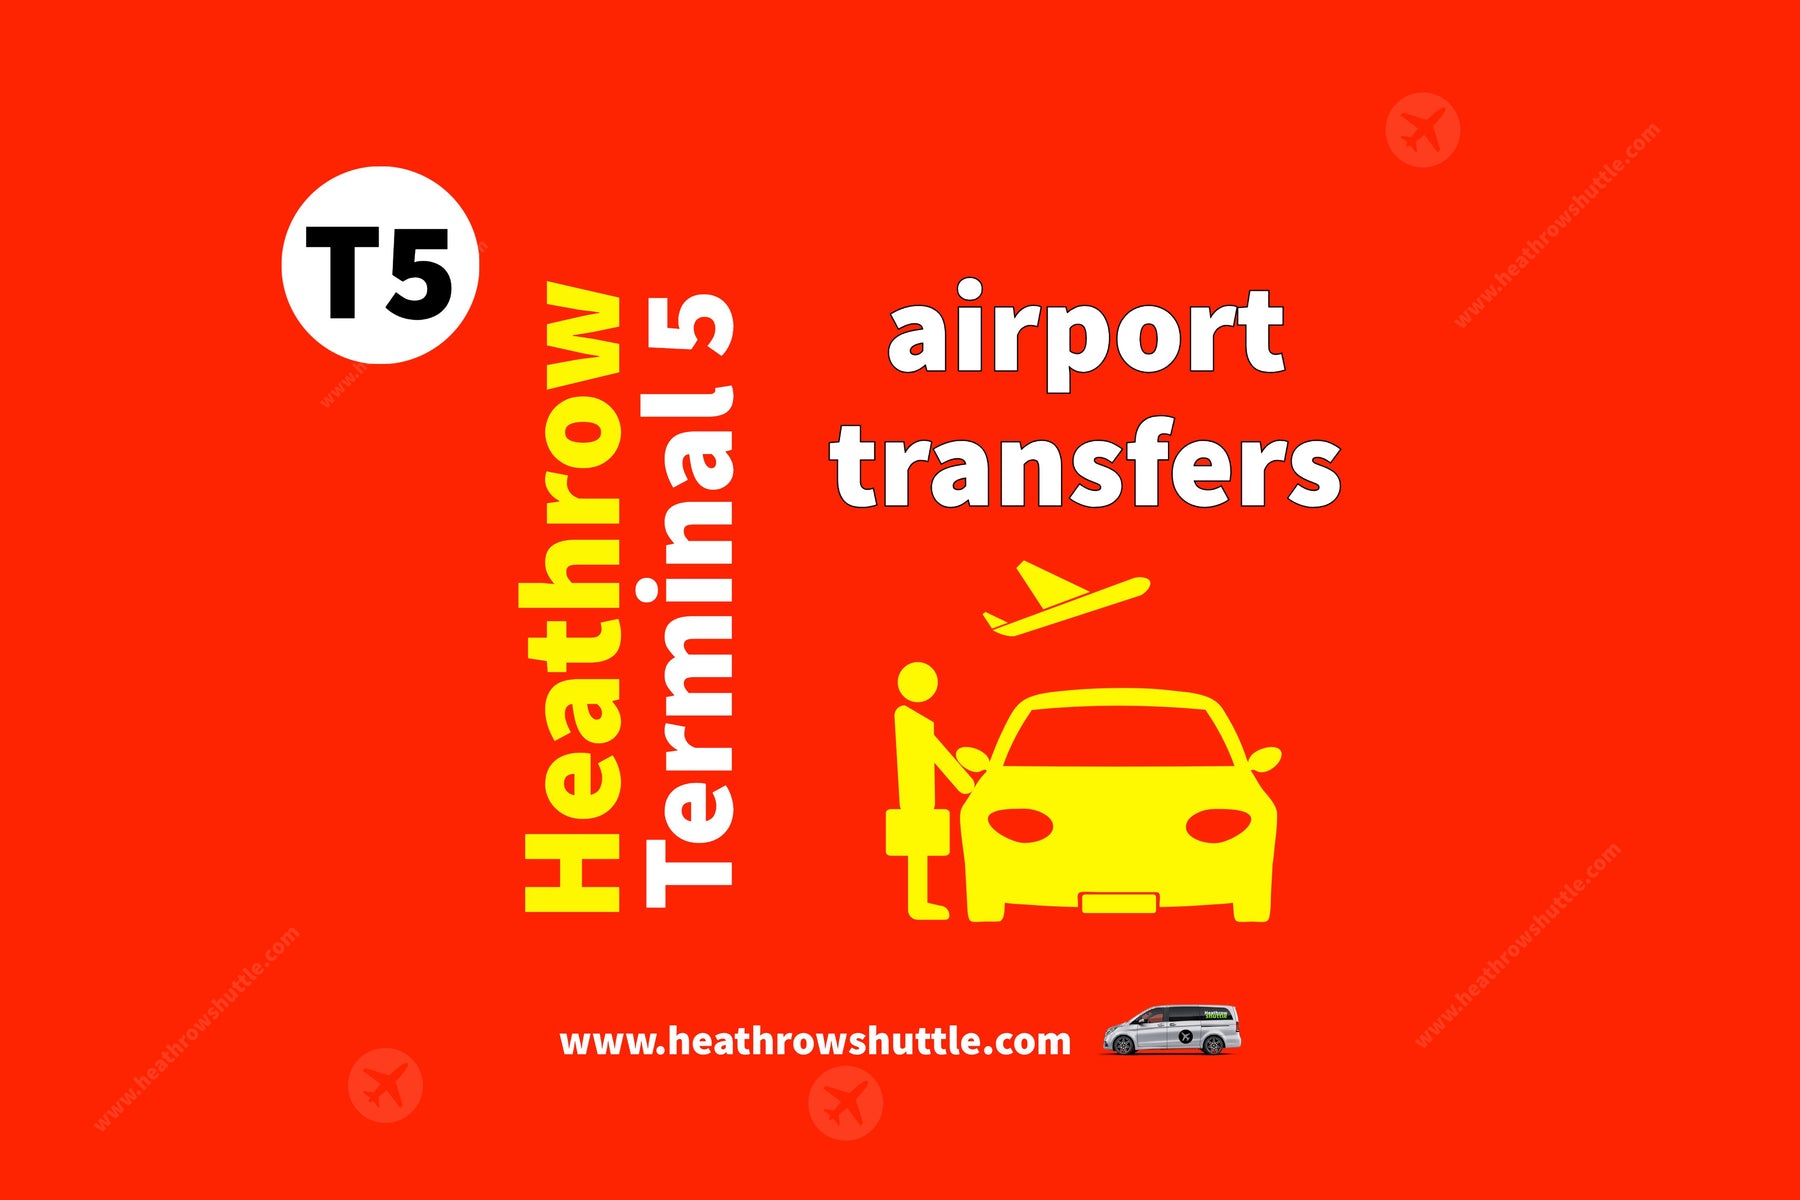 Terminal 5 Transfers